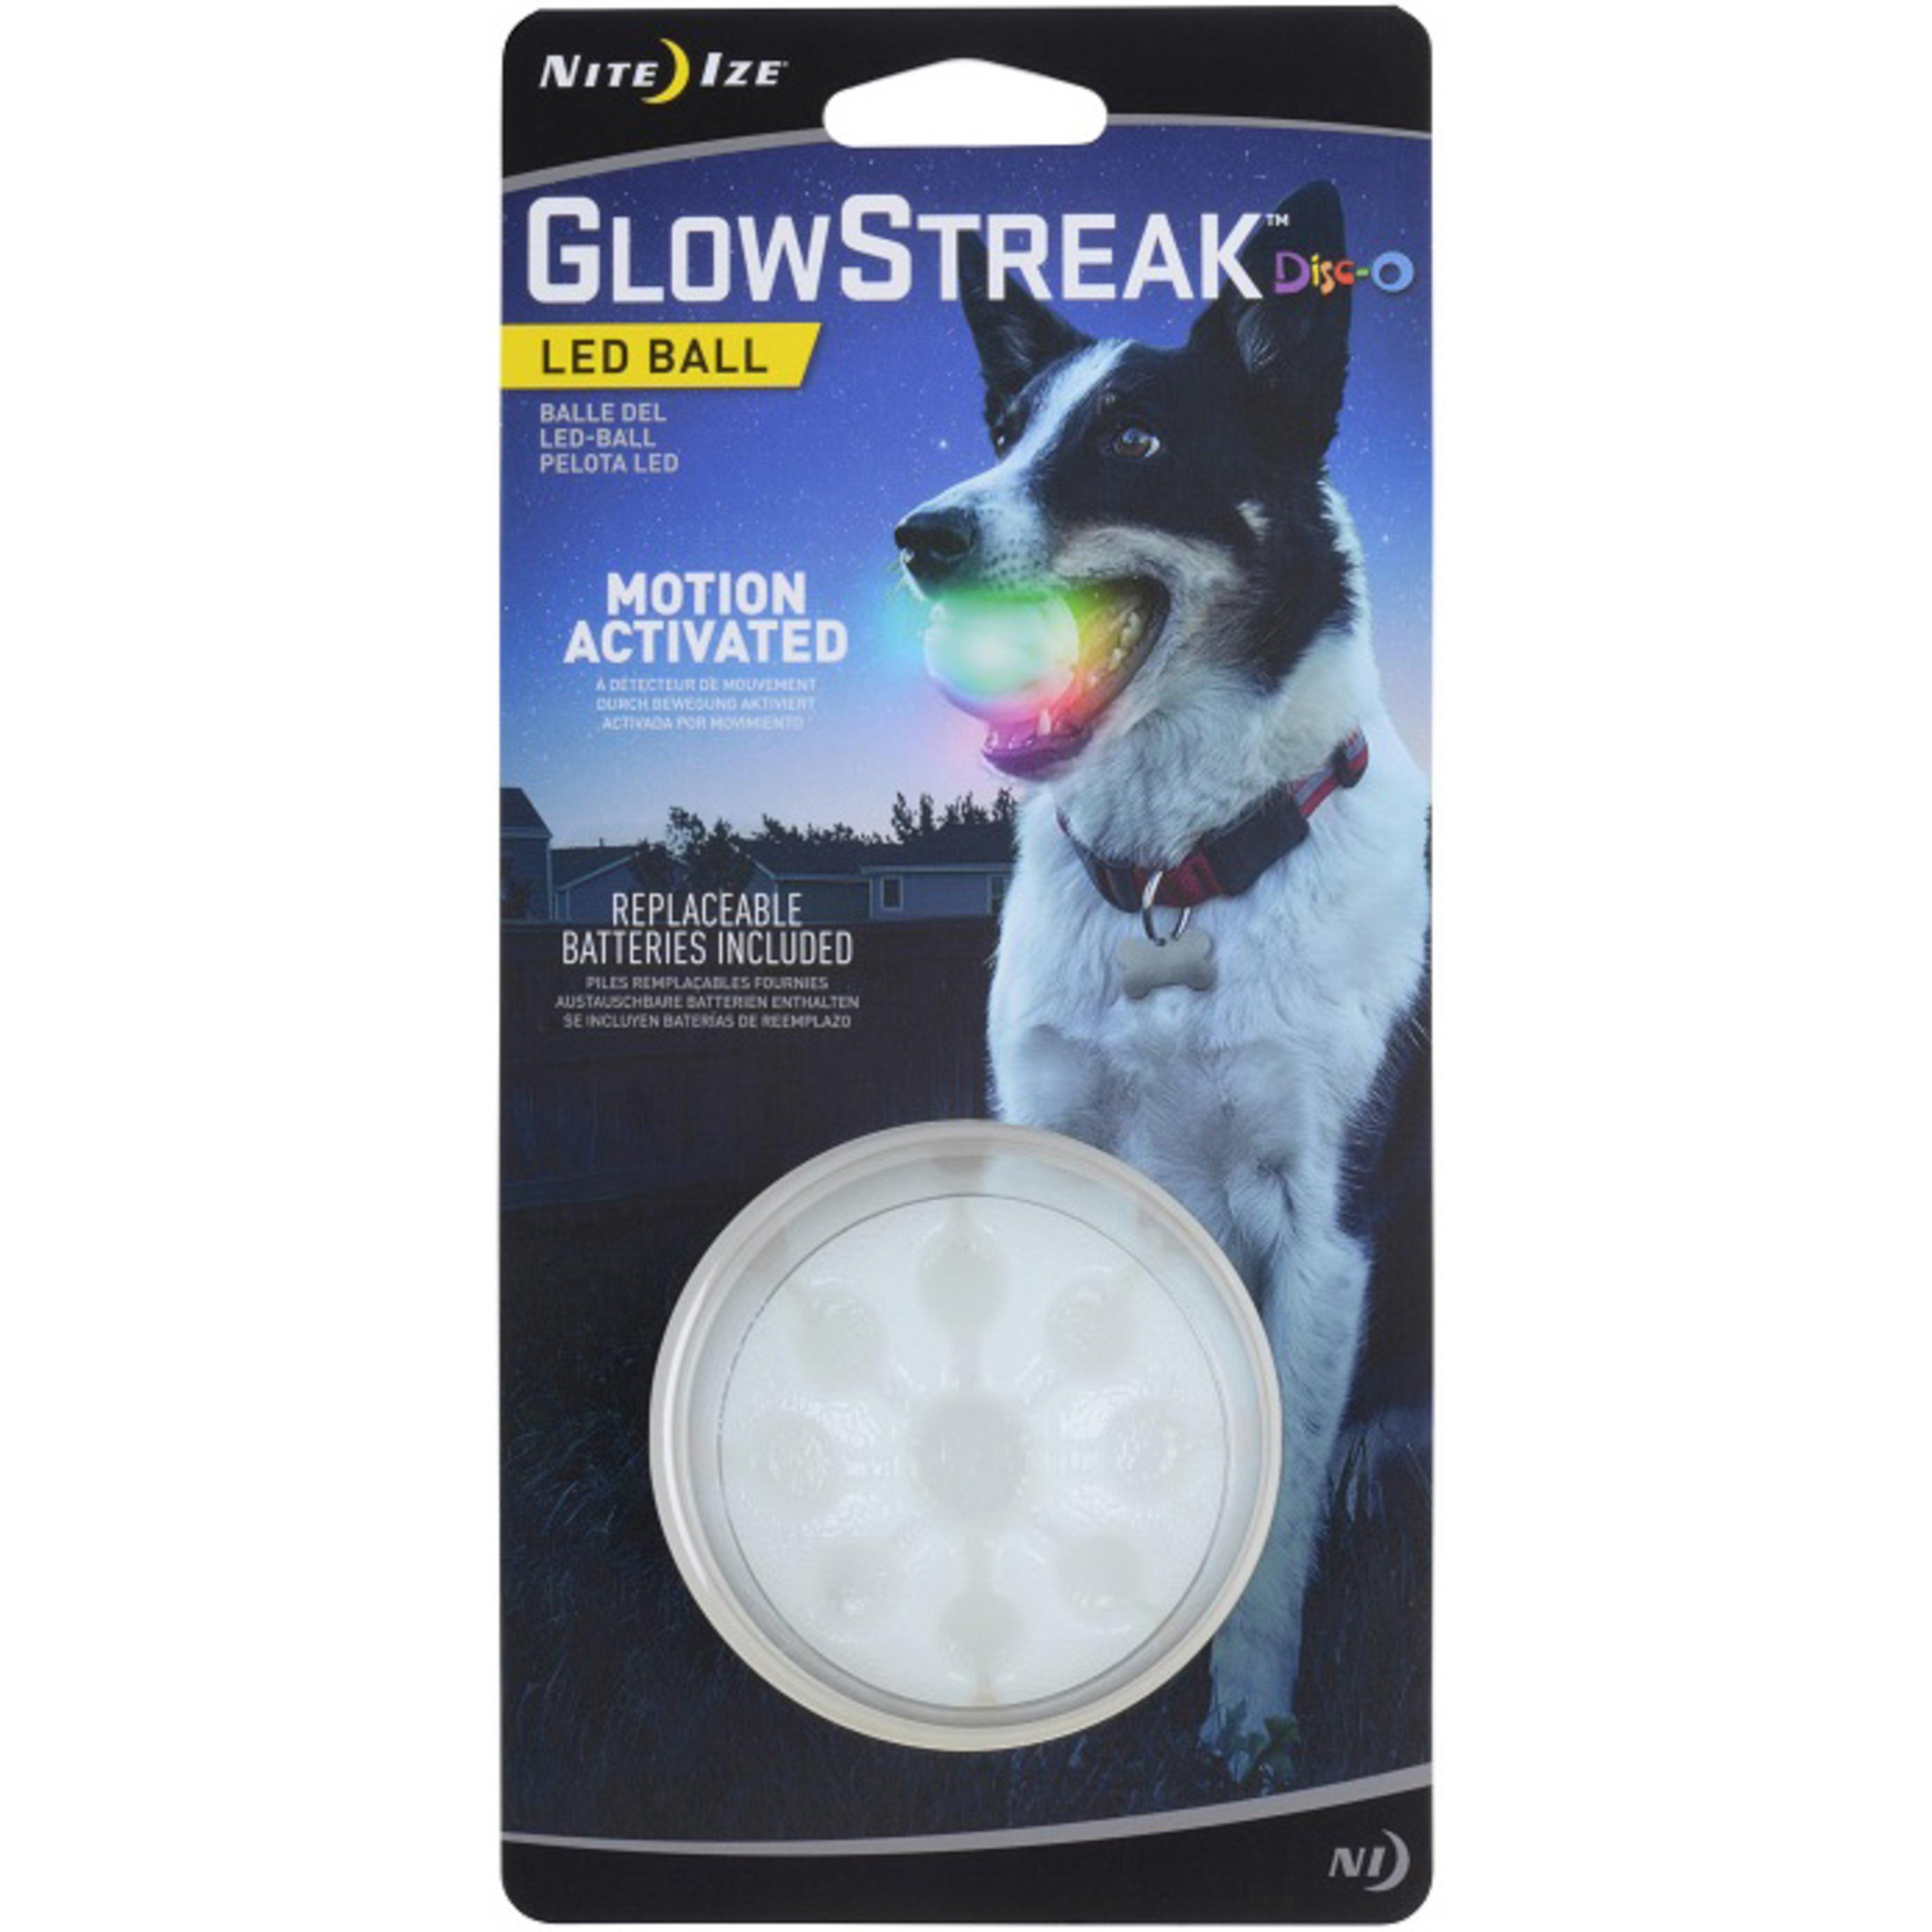 Glowstreak Wild LED Ball Disc-o